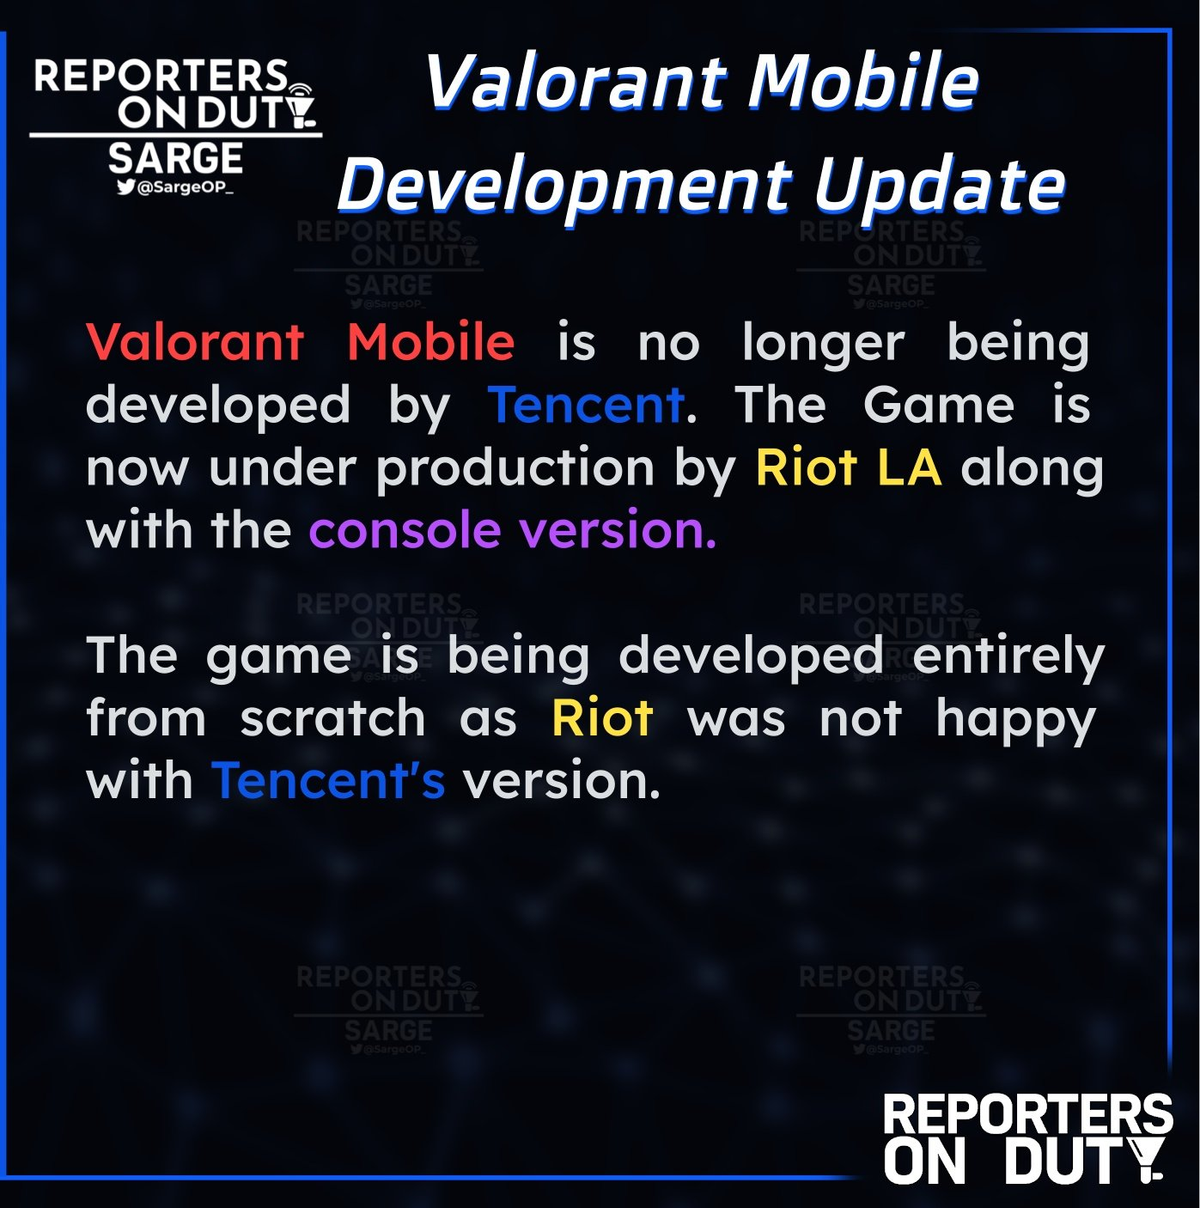 Tencent прекратила разработку Valorant Mobile. Теперь за порт будет отвечать Riot LA